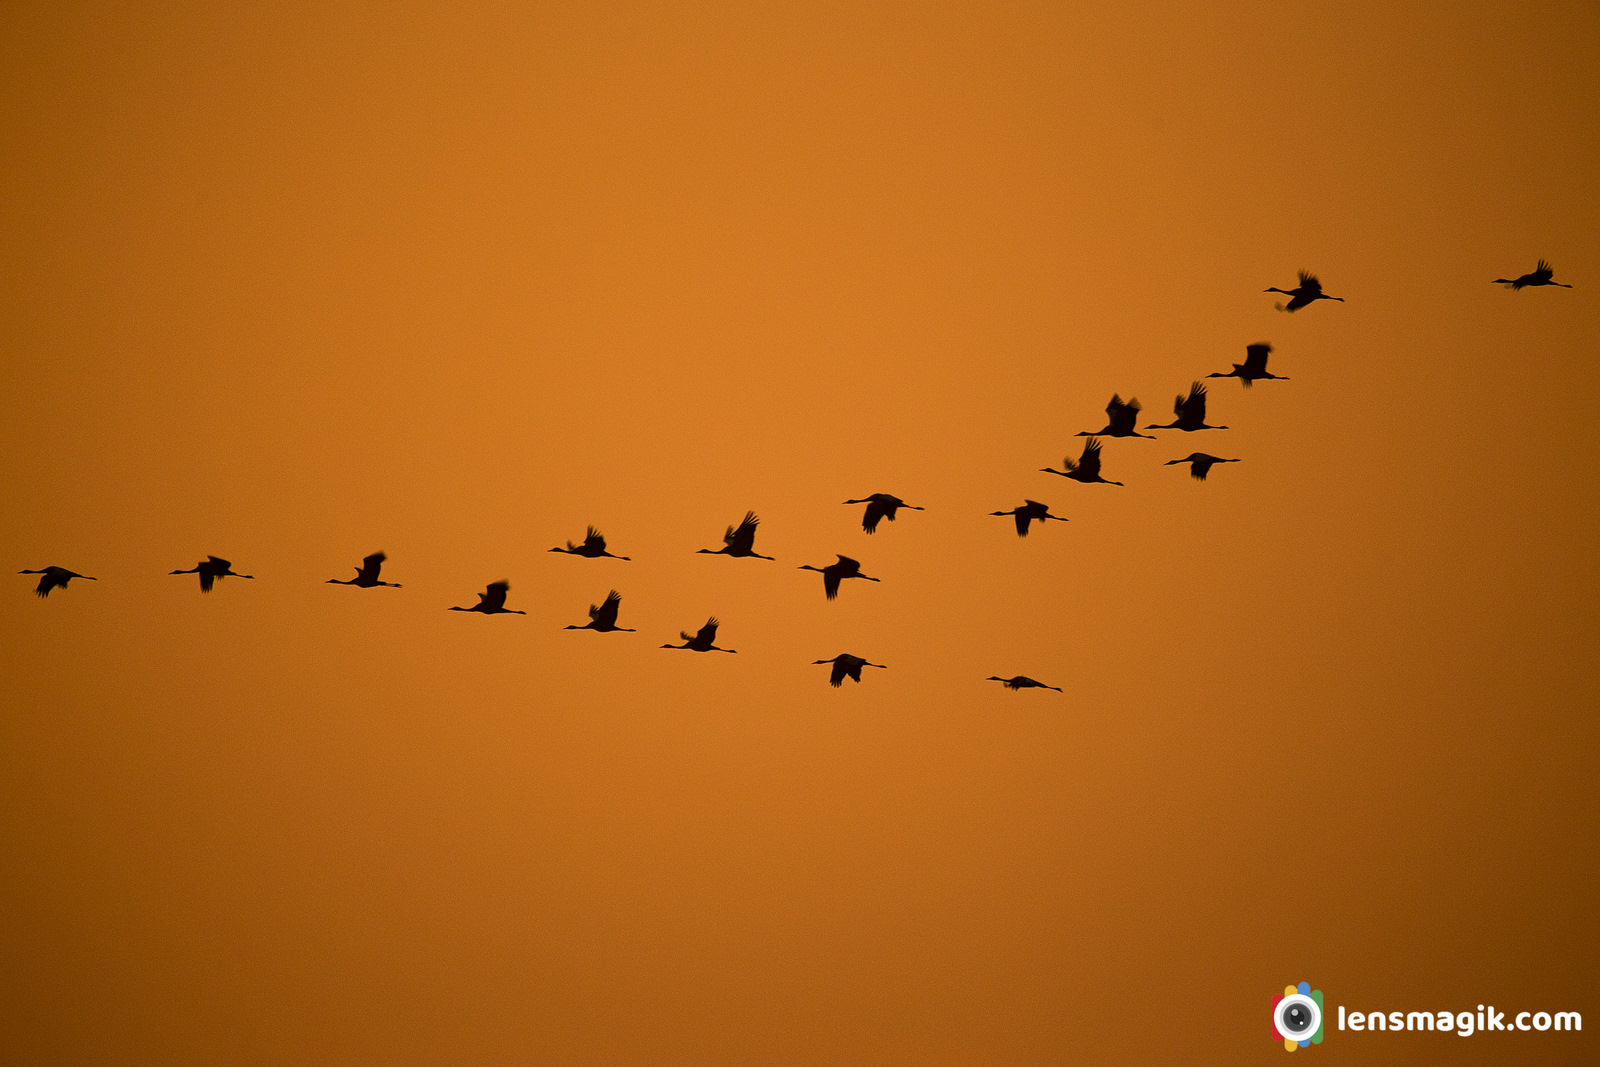 Birds In Flight Images Gujarat